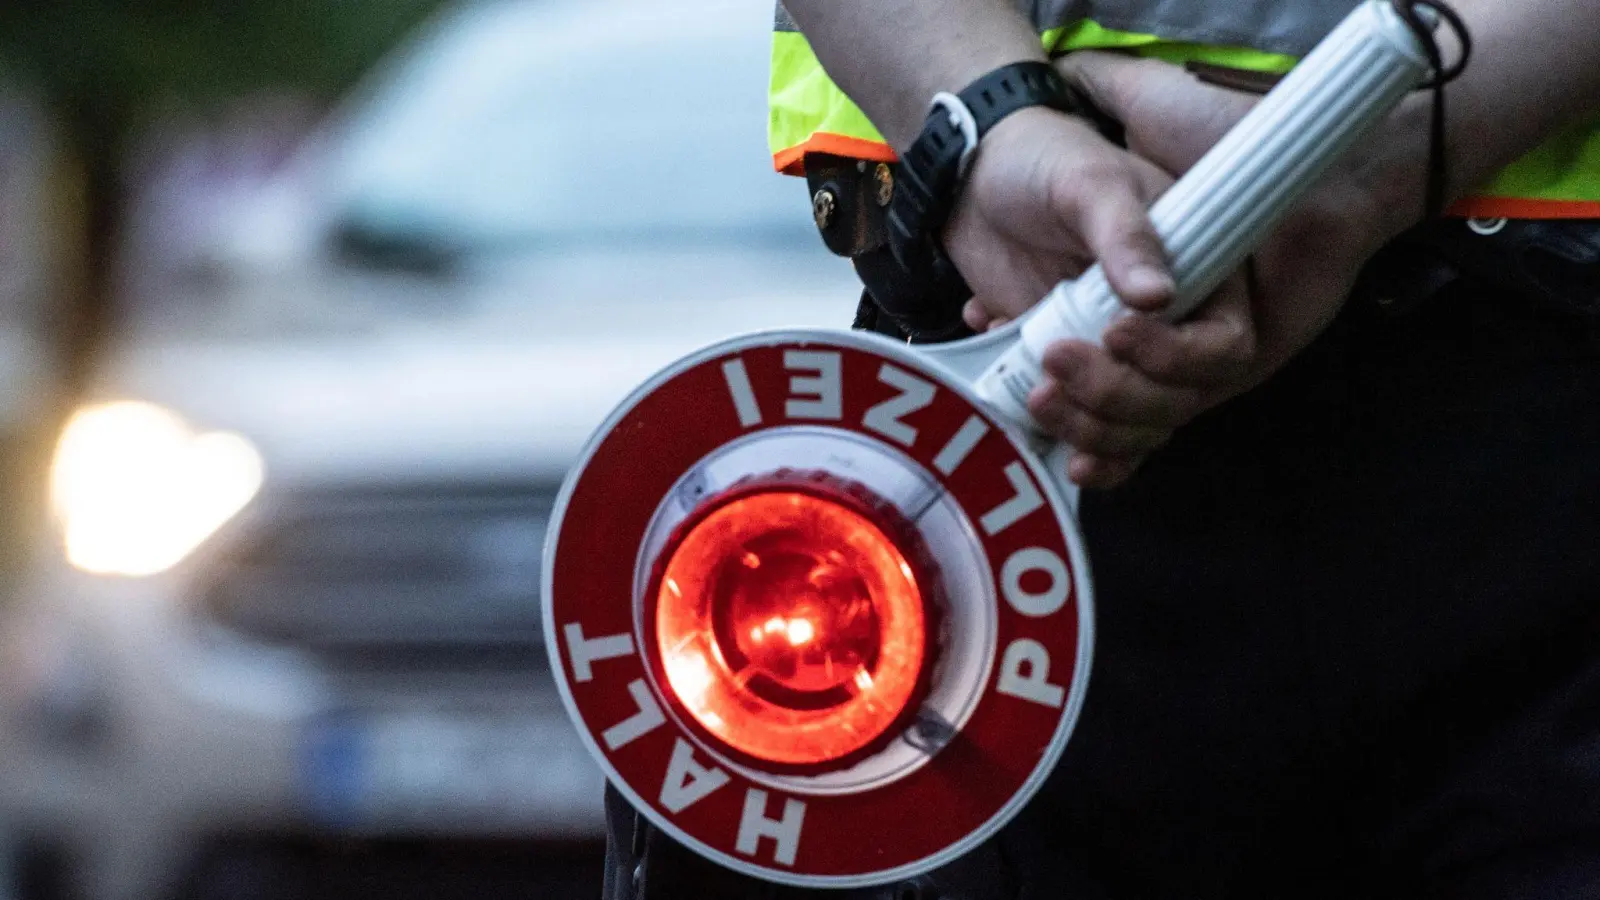 Ein Polizist hält bei einer Verkehrskontrolle eine Winkerkelle in der Hand. (Foto: Paul Zinken/dpa/ZB/Symbolbild)